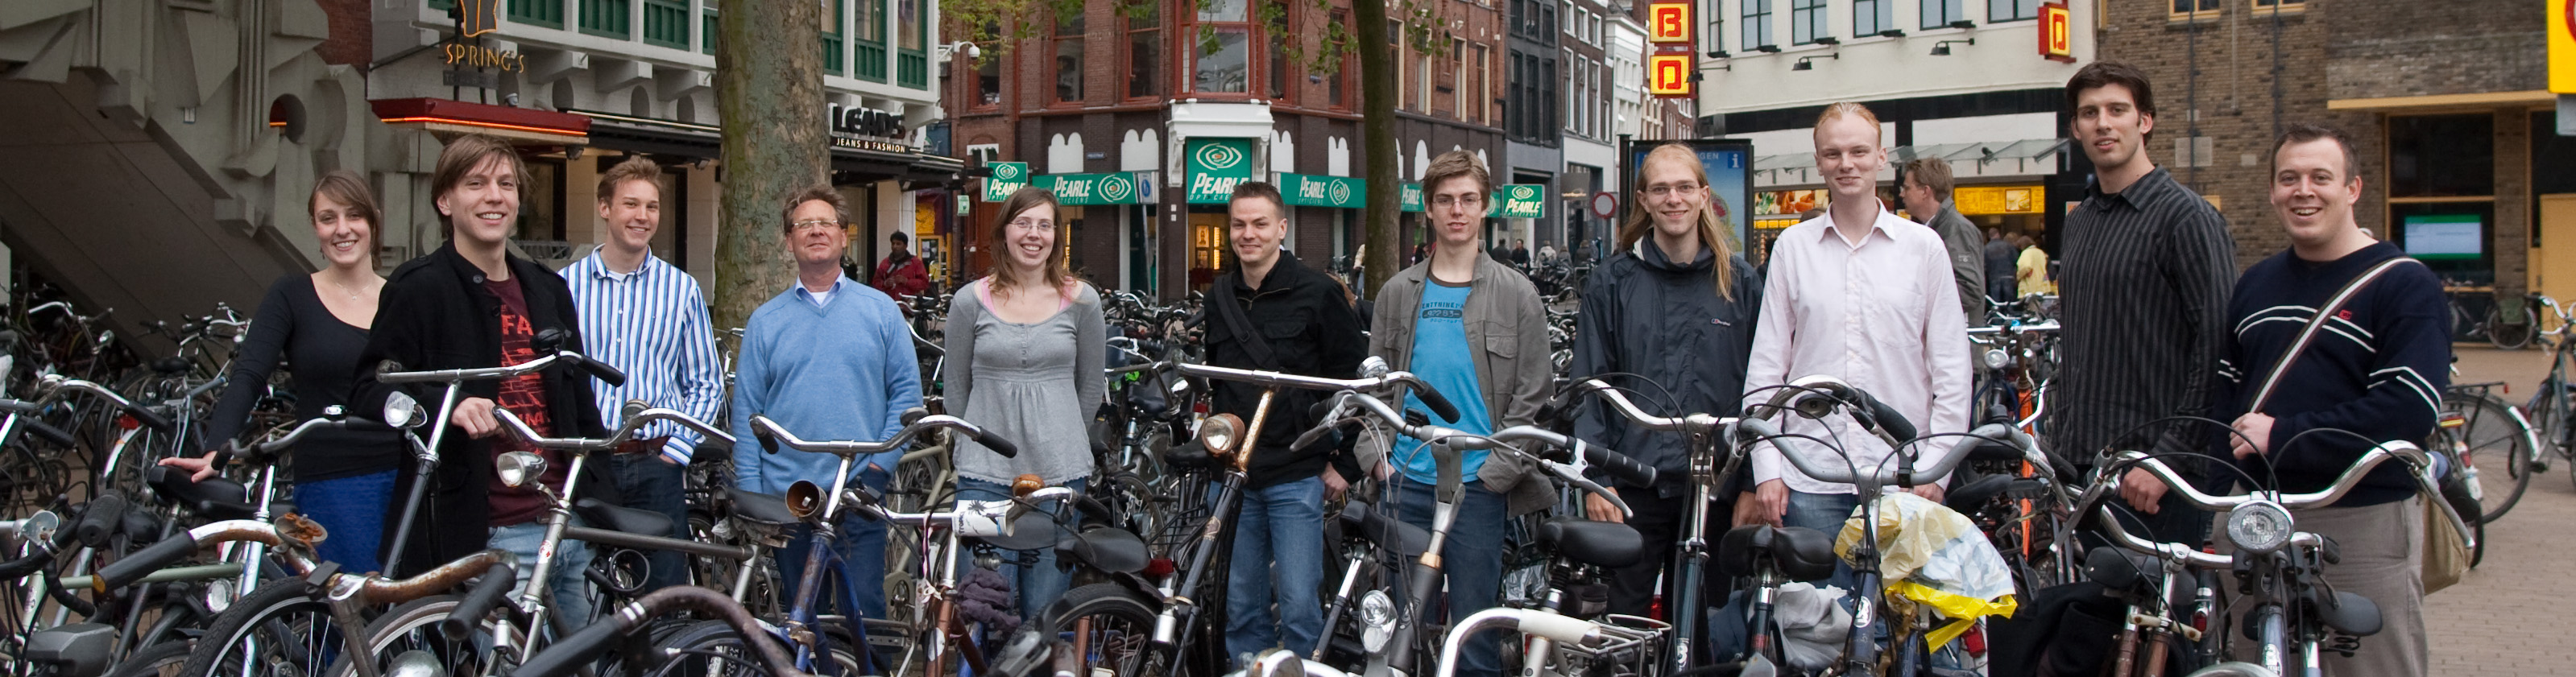 Team Groningen Bikes Pano.jpg